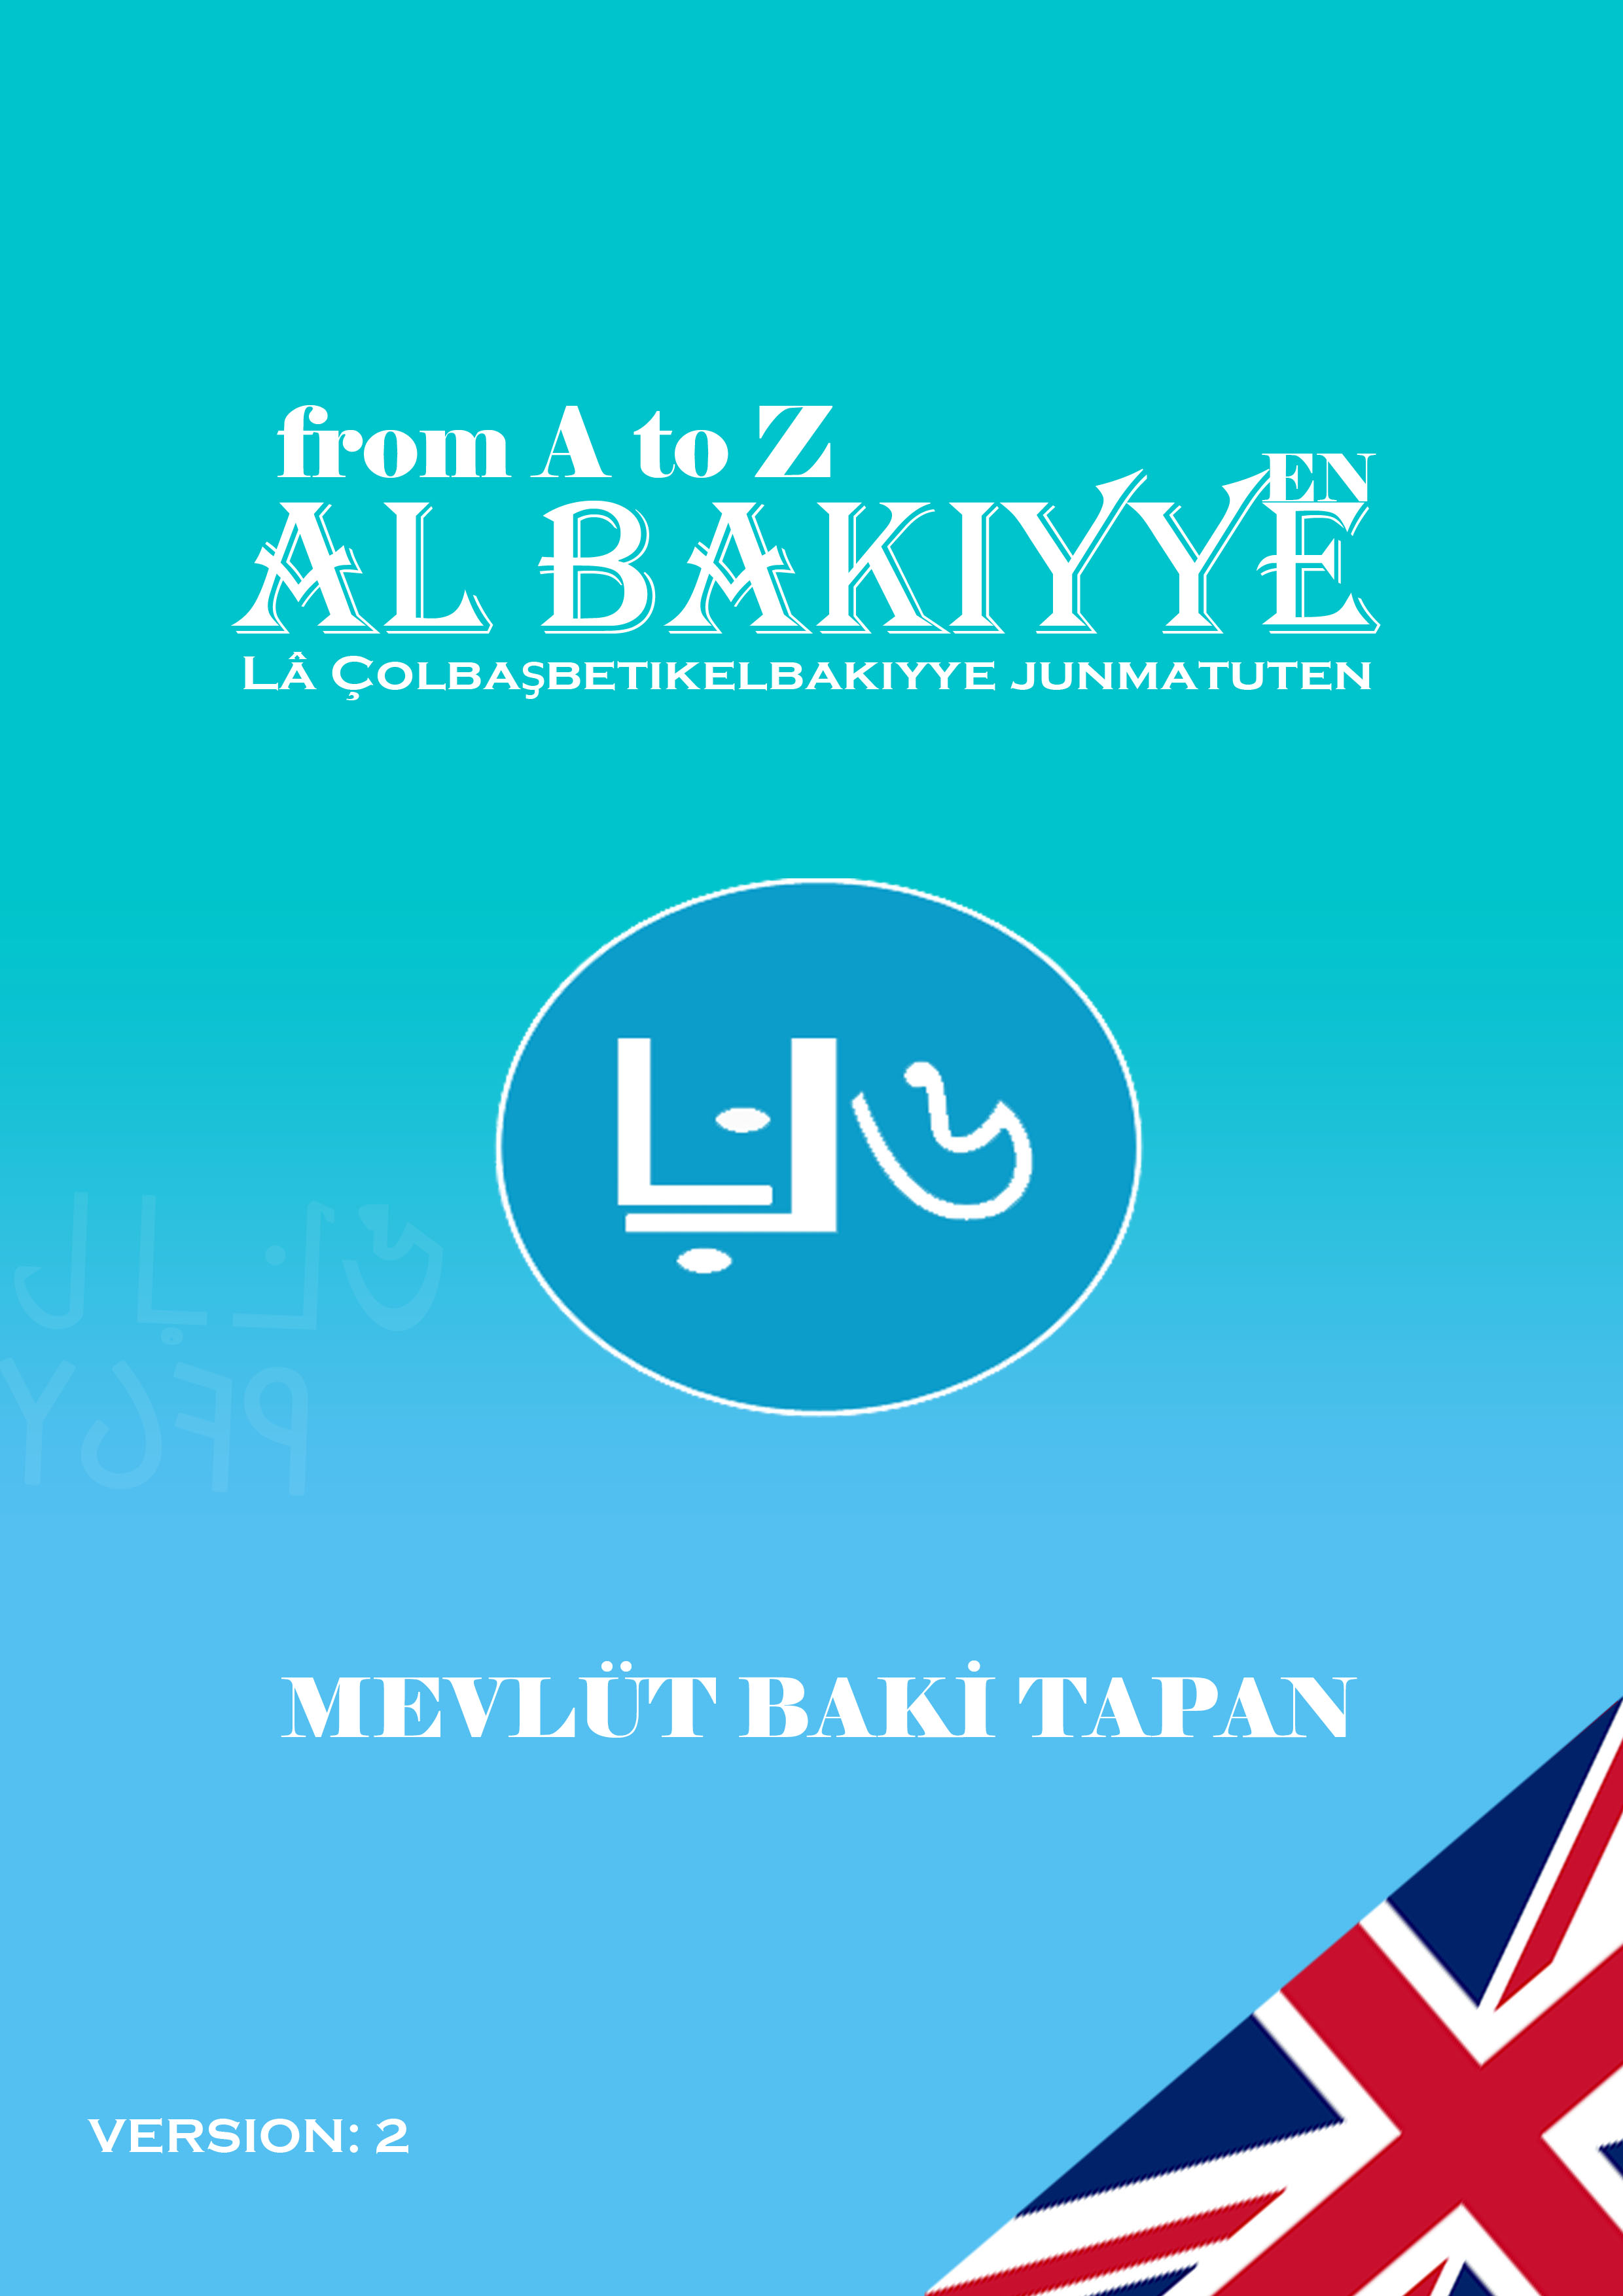 From A to Z Al Bakiyye language